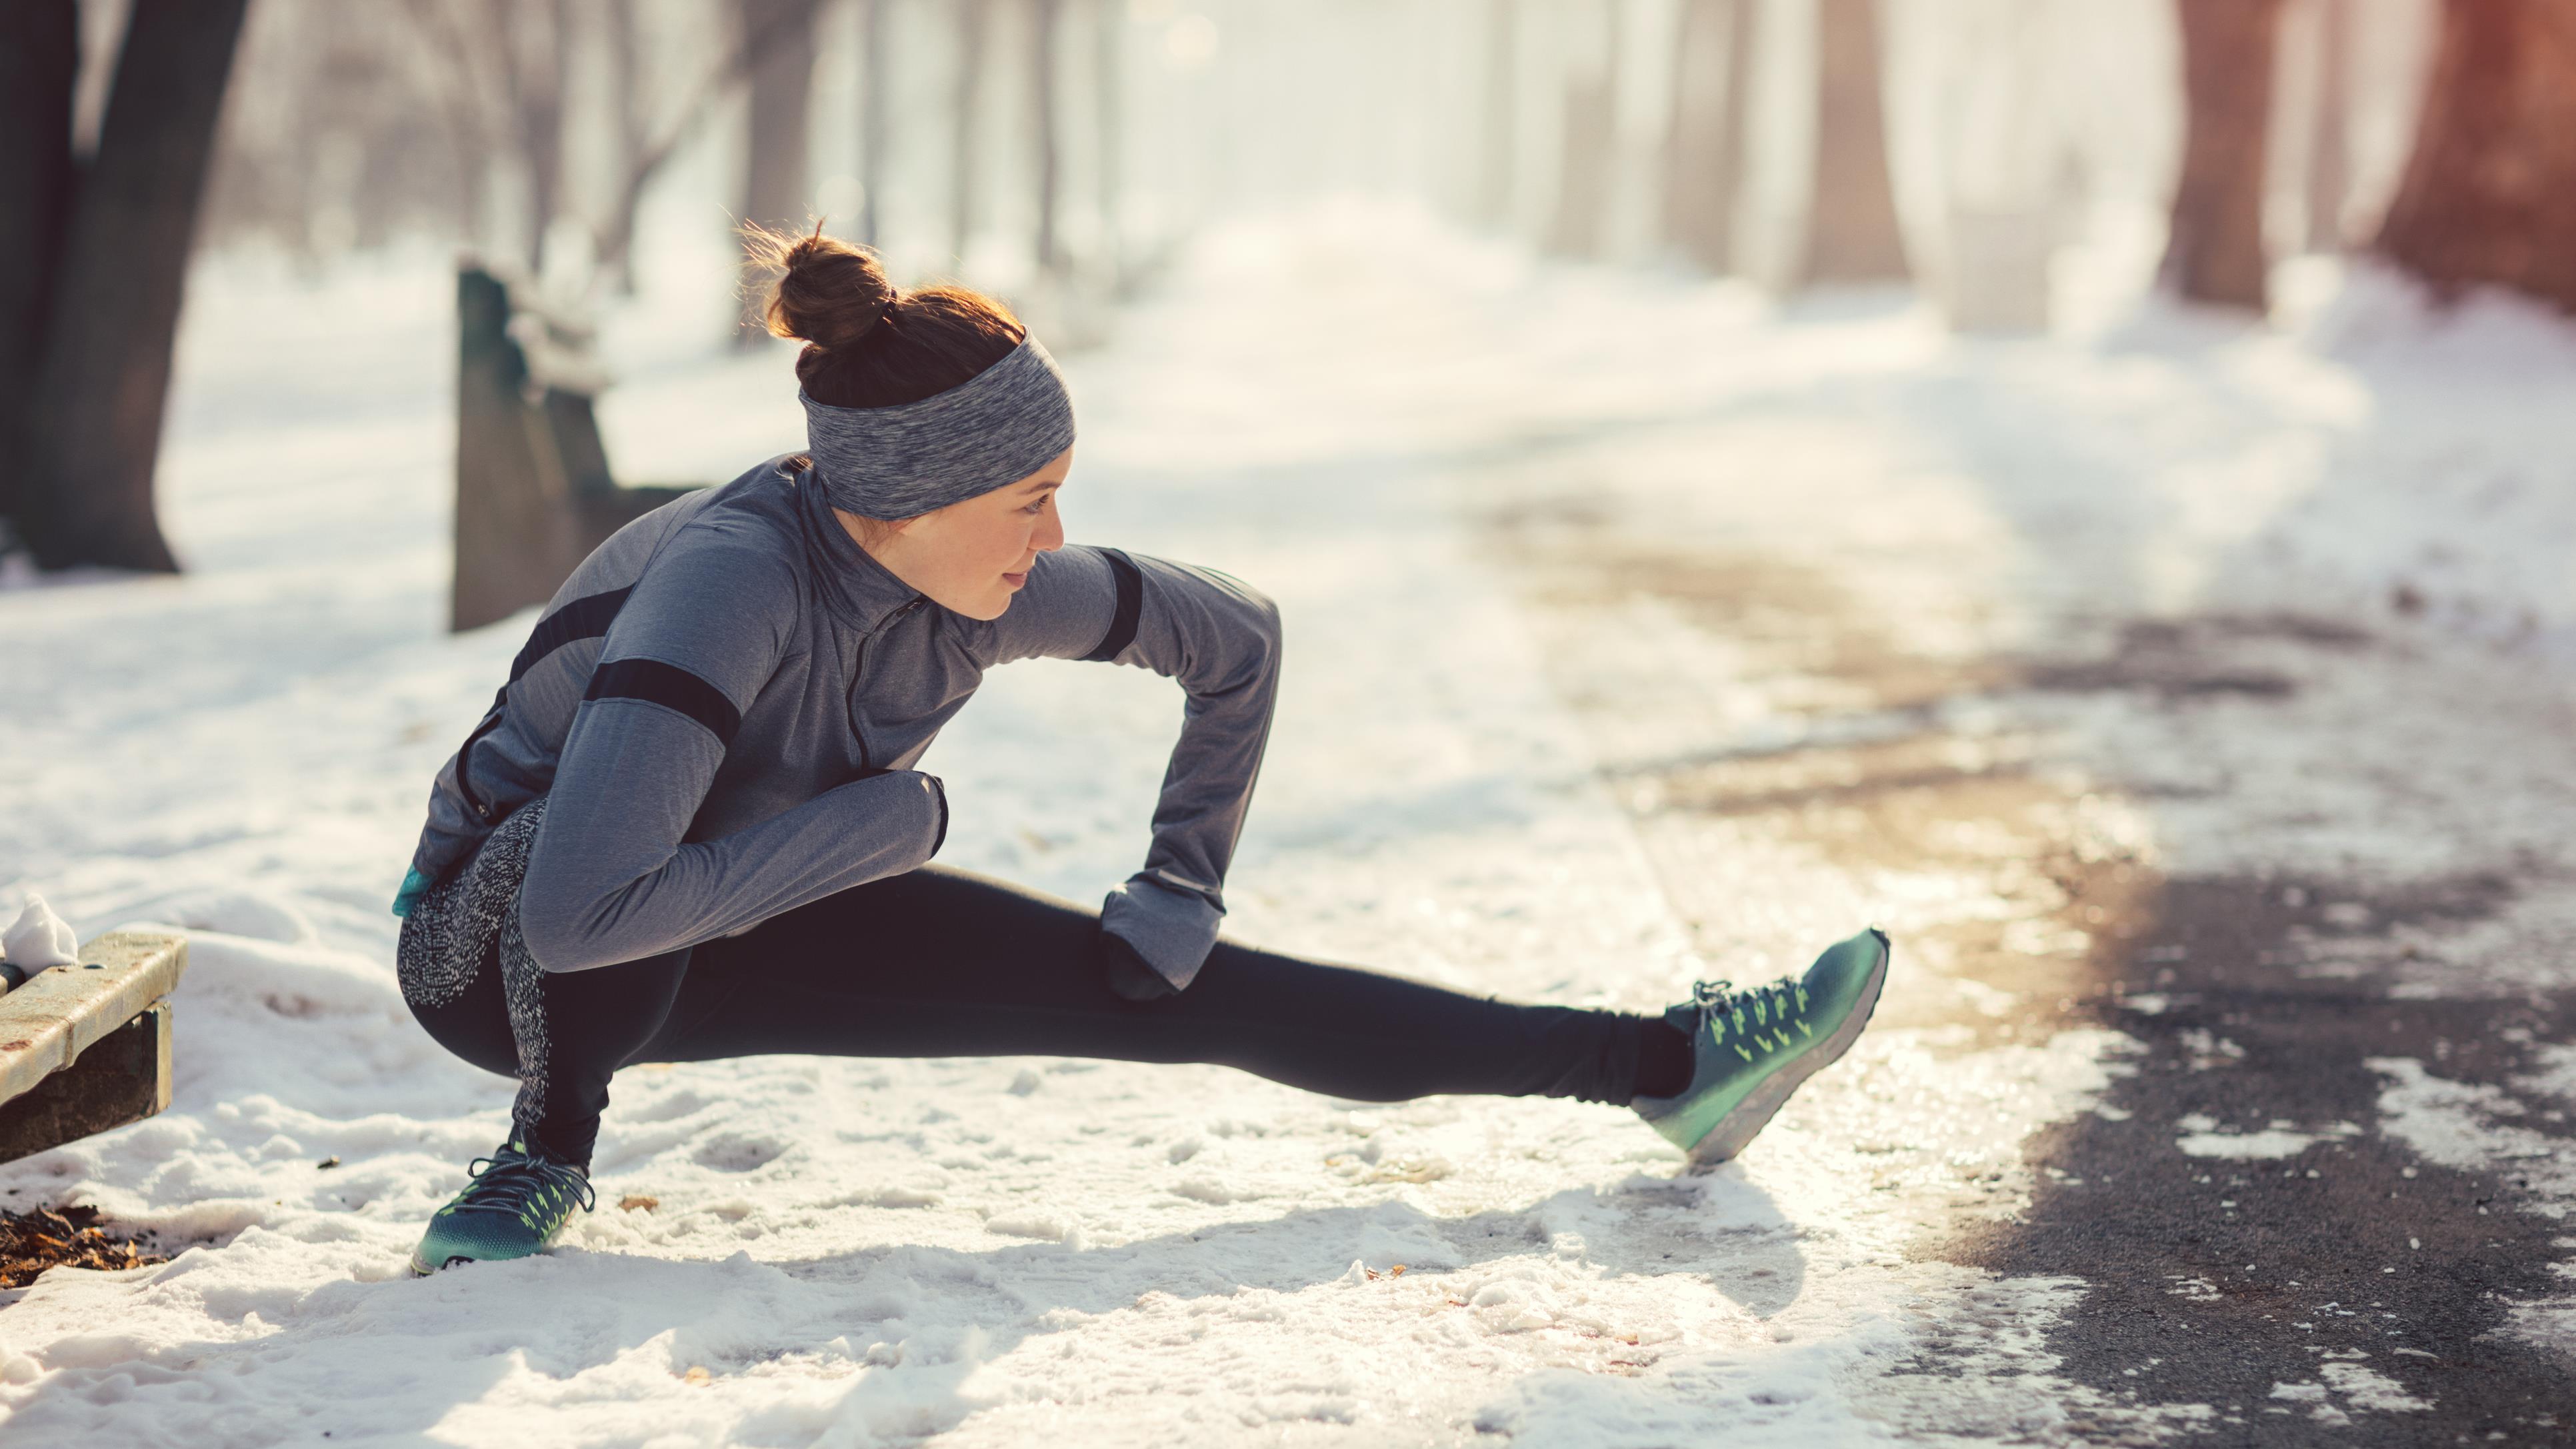 Votre santé expliquée  :  l'activité physique en hiver
Votre santé expliquée  :  l'activité physique en hiver